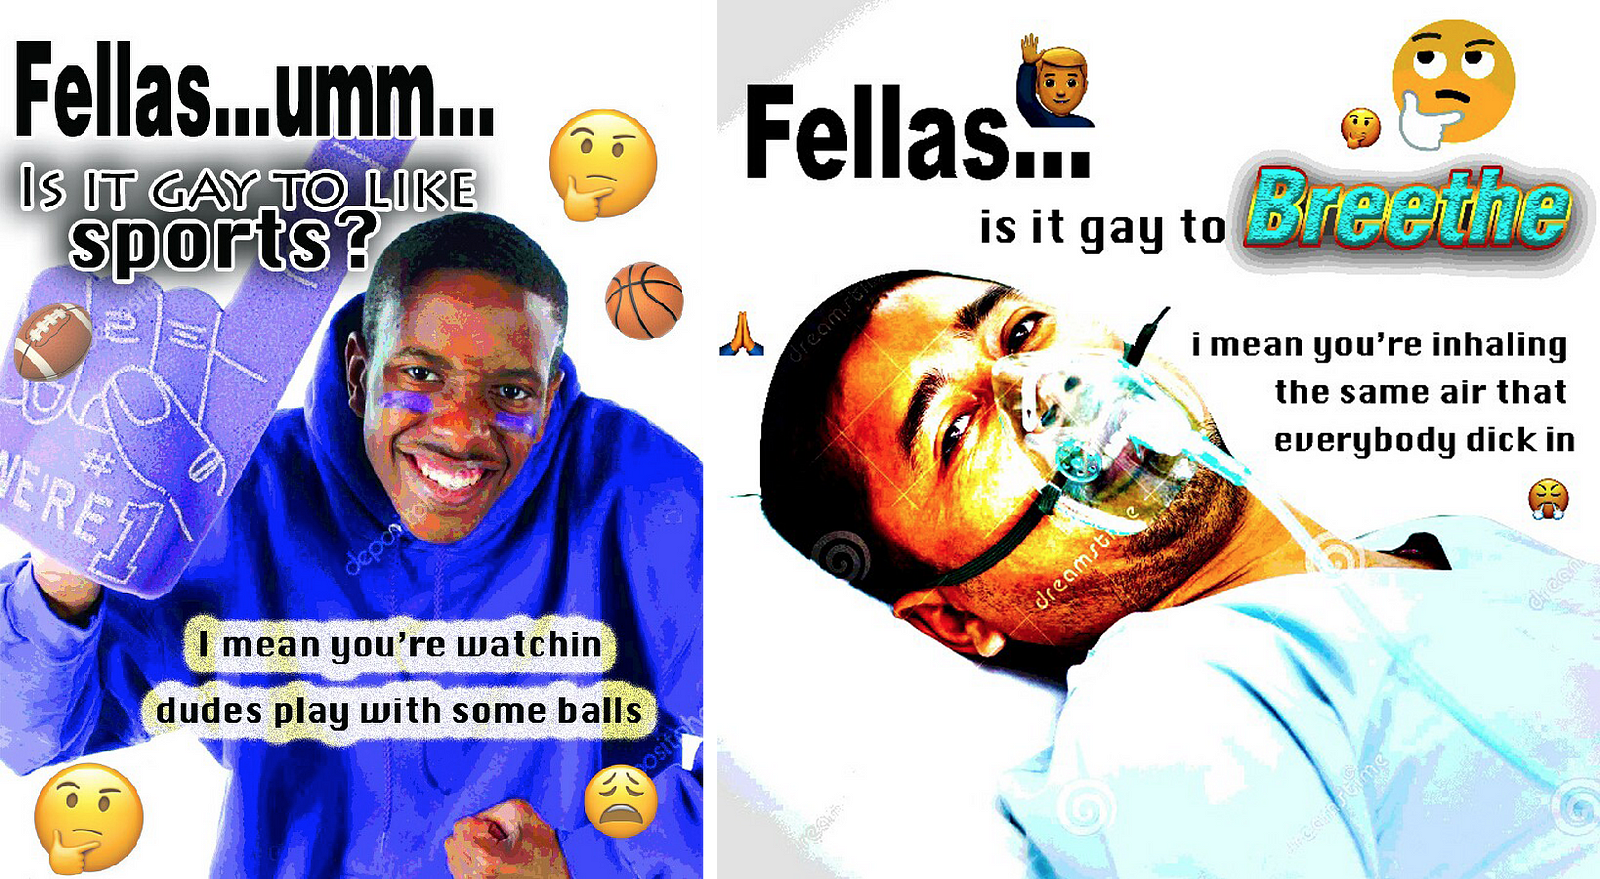 fellas is it gay meme reddit